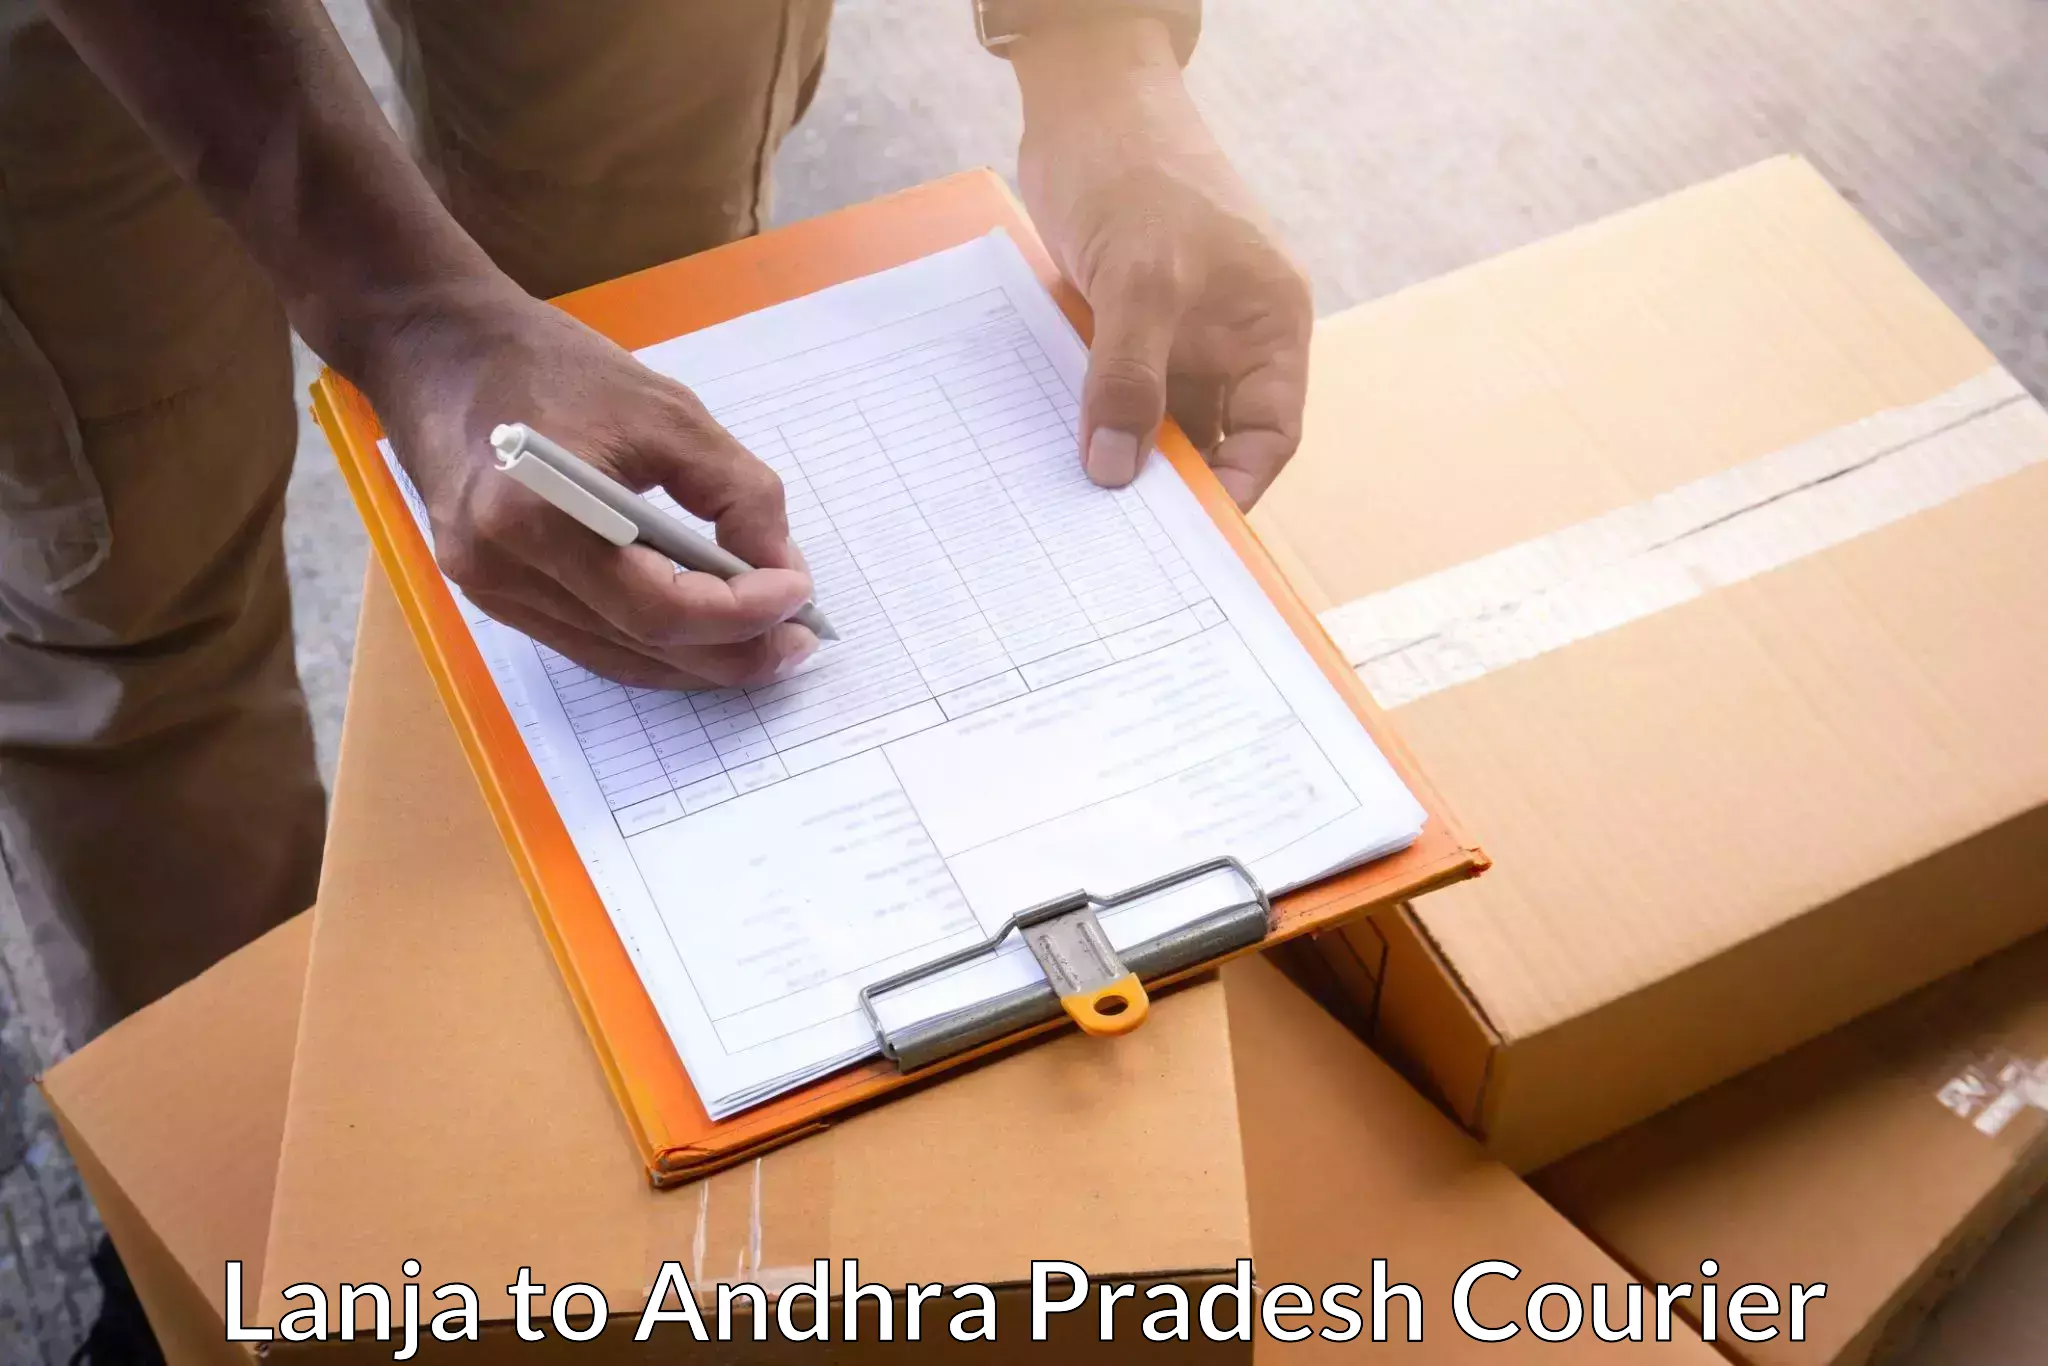 Courier service innovation Lanja to Ganapavaram